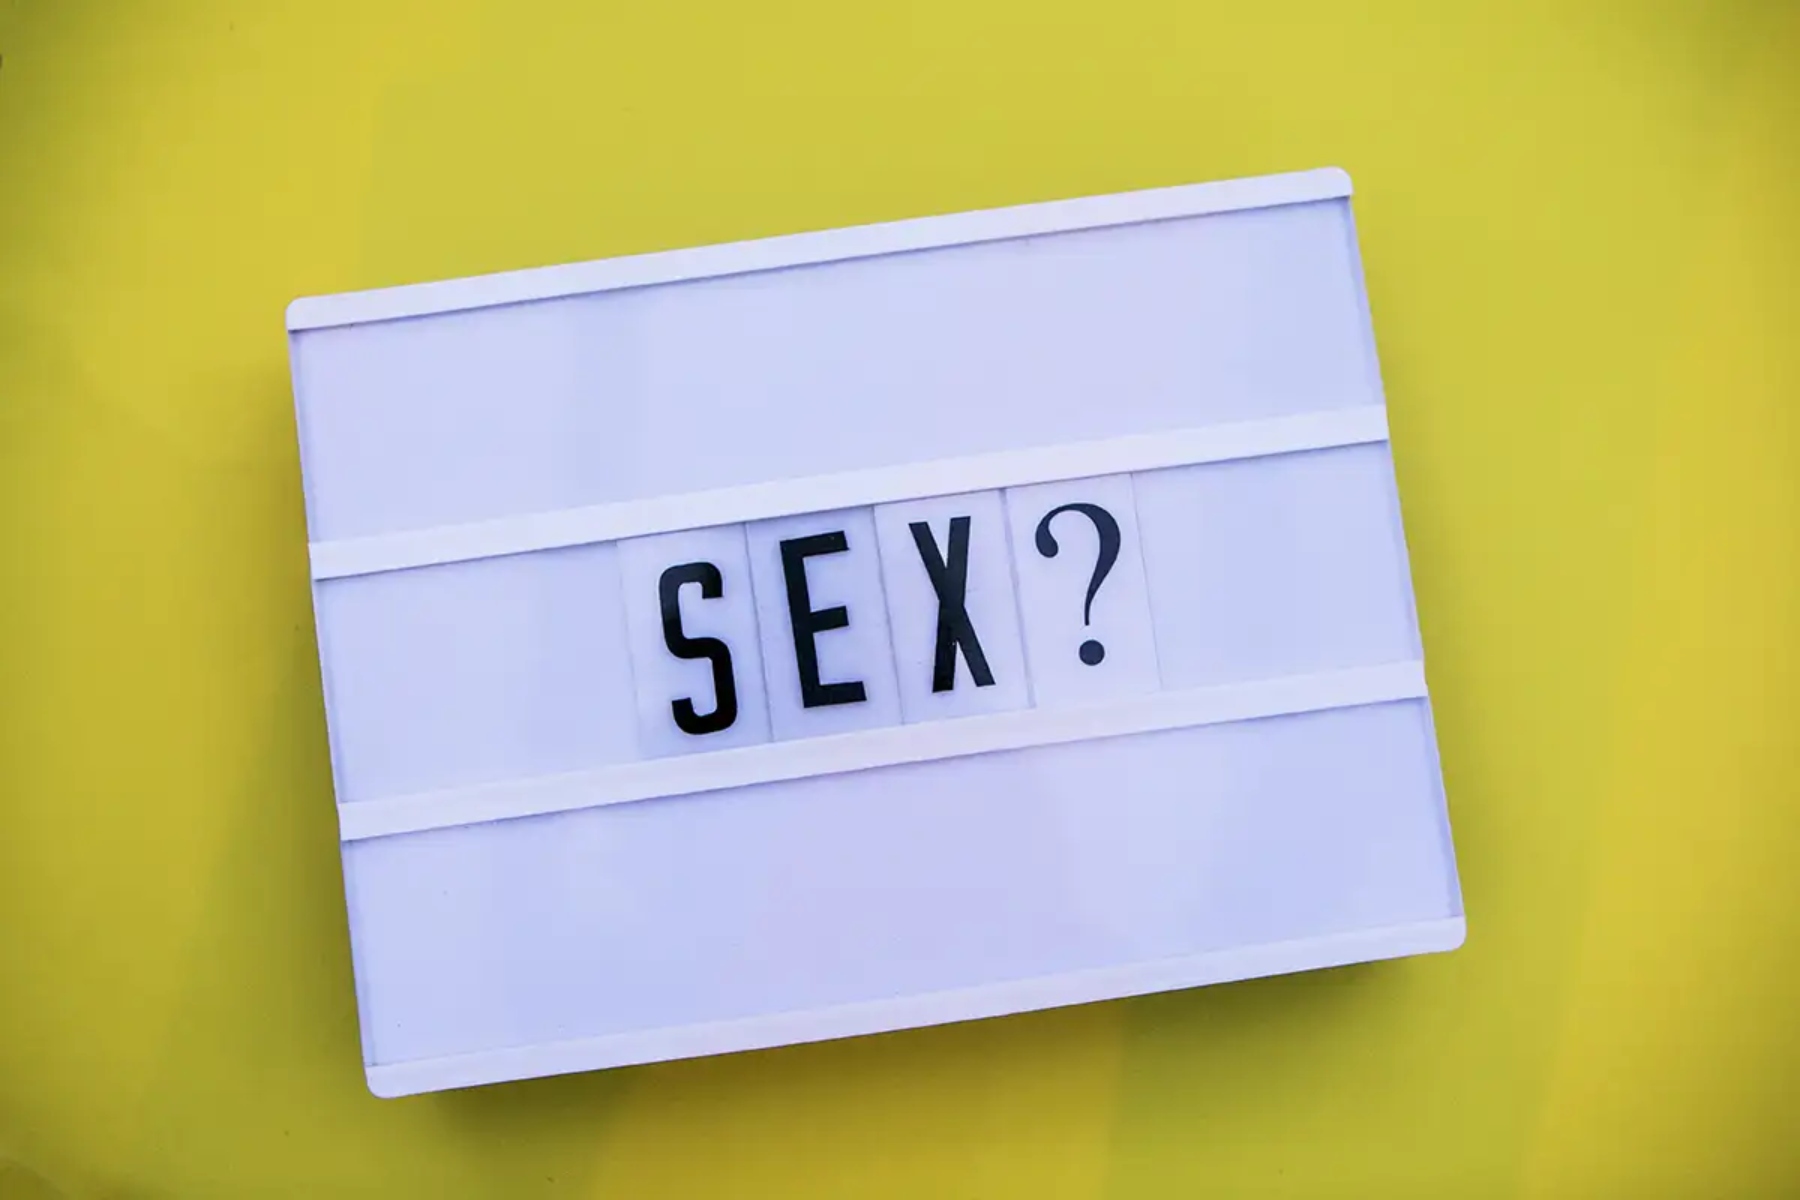 Σεξ σύντροφος: Πού και πώς να κάνετε σεξ με τον σύντροφό σας αν δεν έχετε χρόνο;